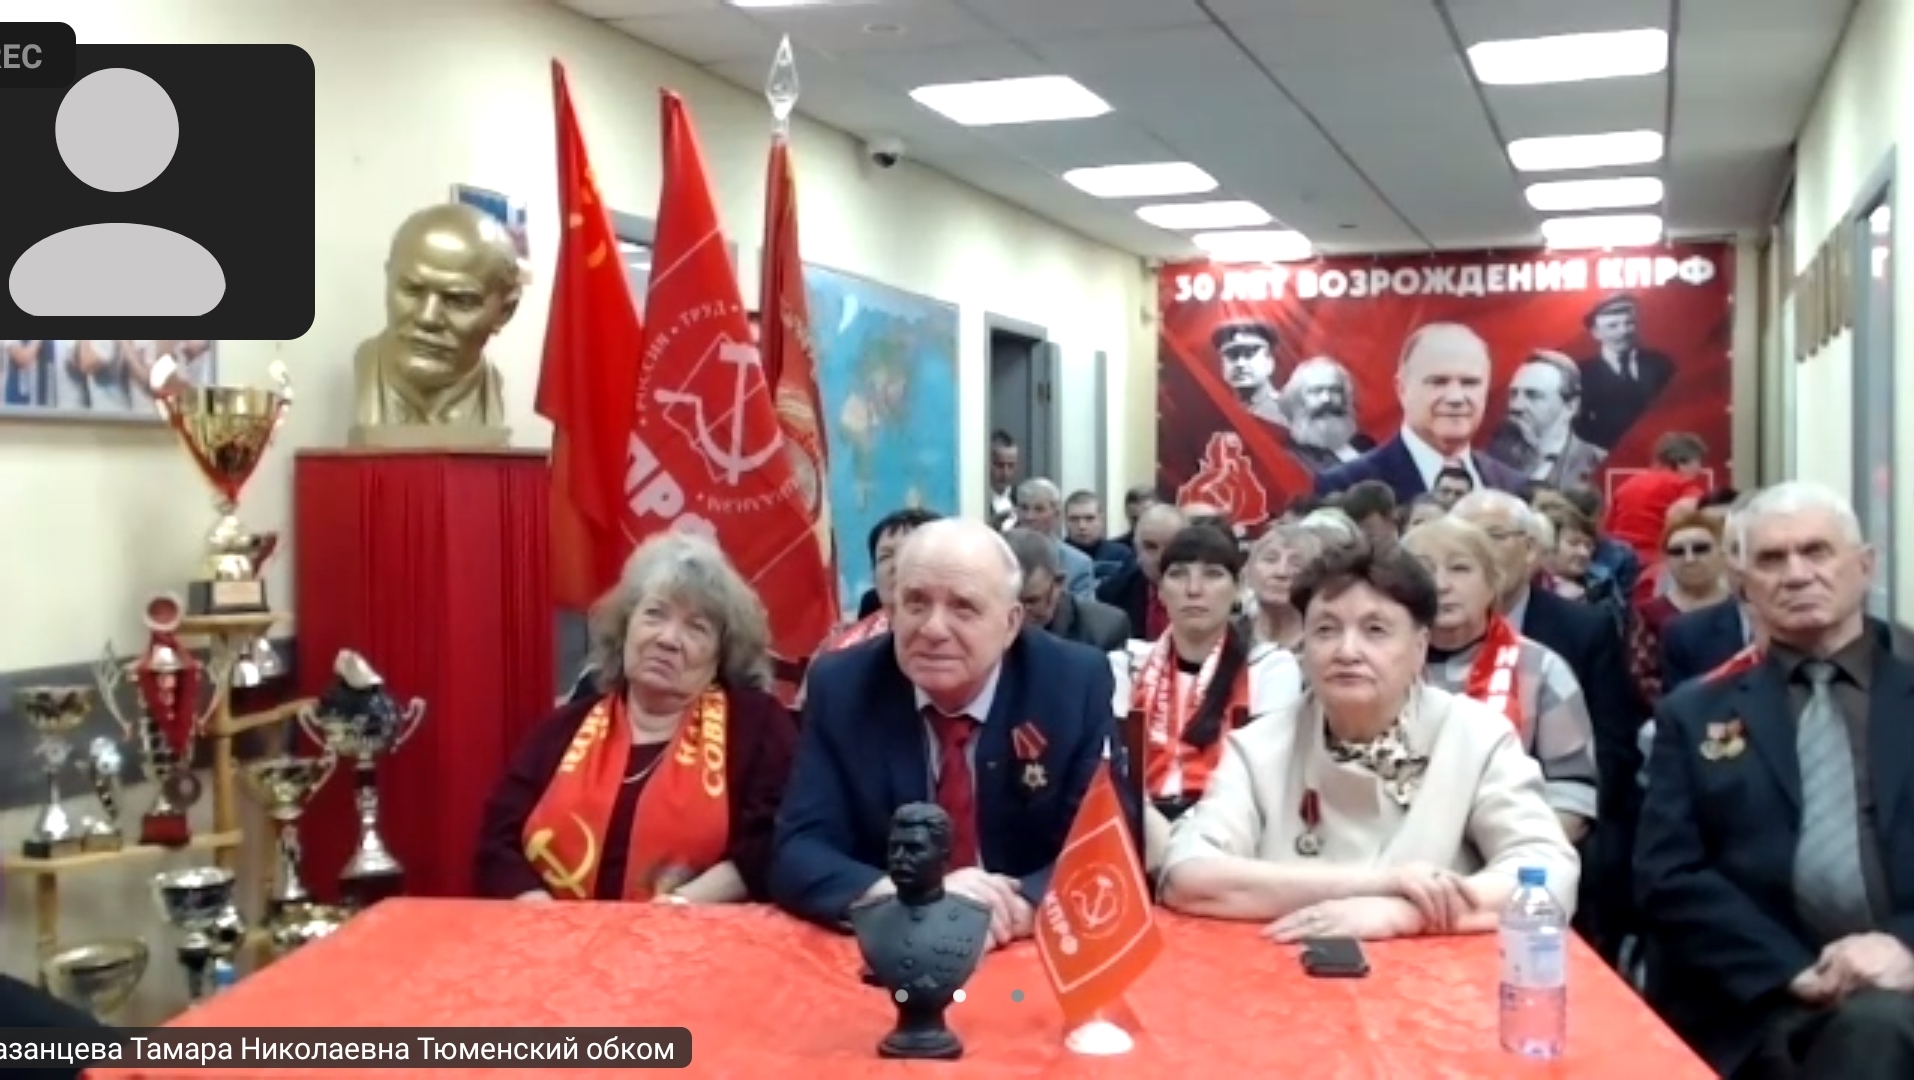 Тюменские коммунисты отметили 30-летие КПРФ